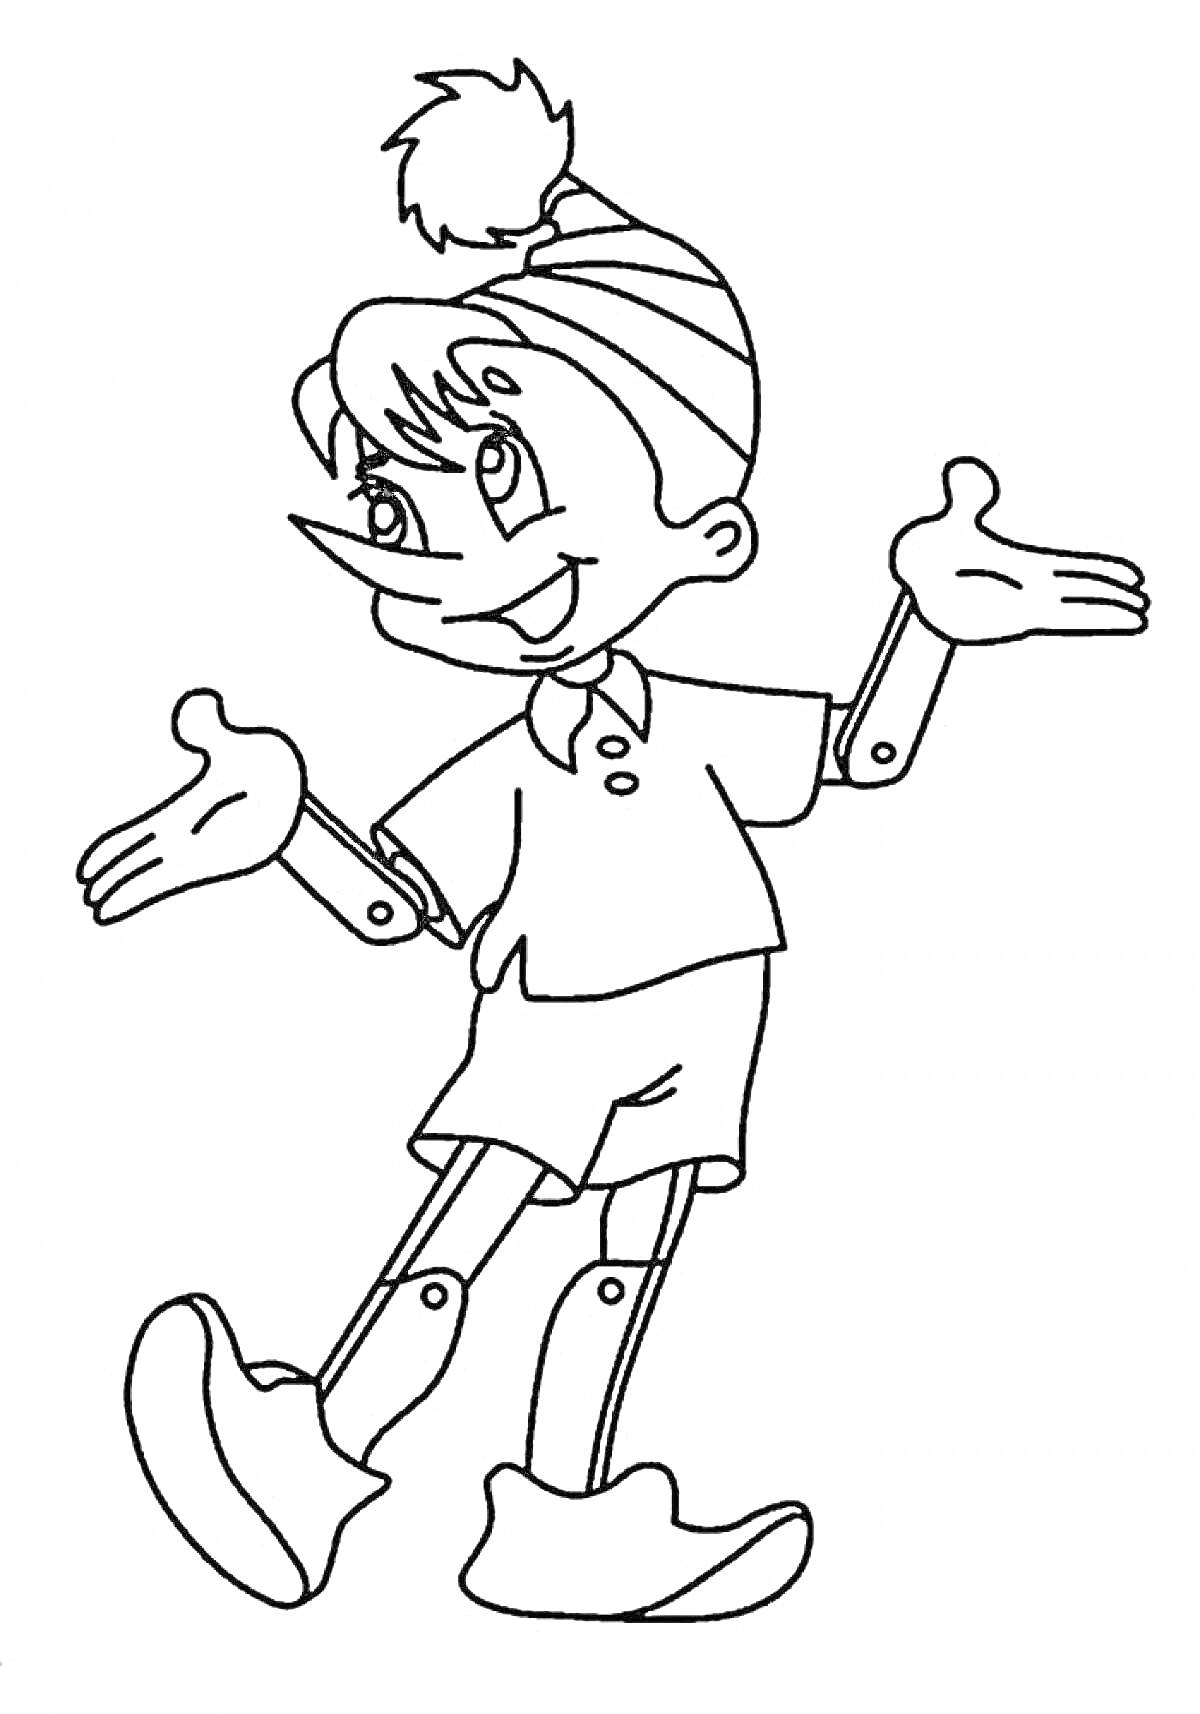 Мальвина с короткими волосами, в шортах и майке с воротничком, в полосатой шапке с помпоном, с вытянутыми руками в стороны, на согнутых ногах